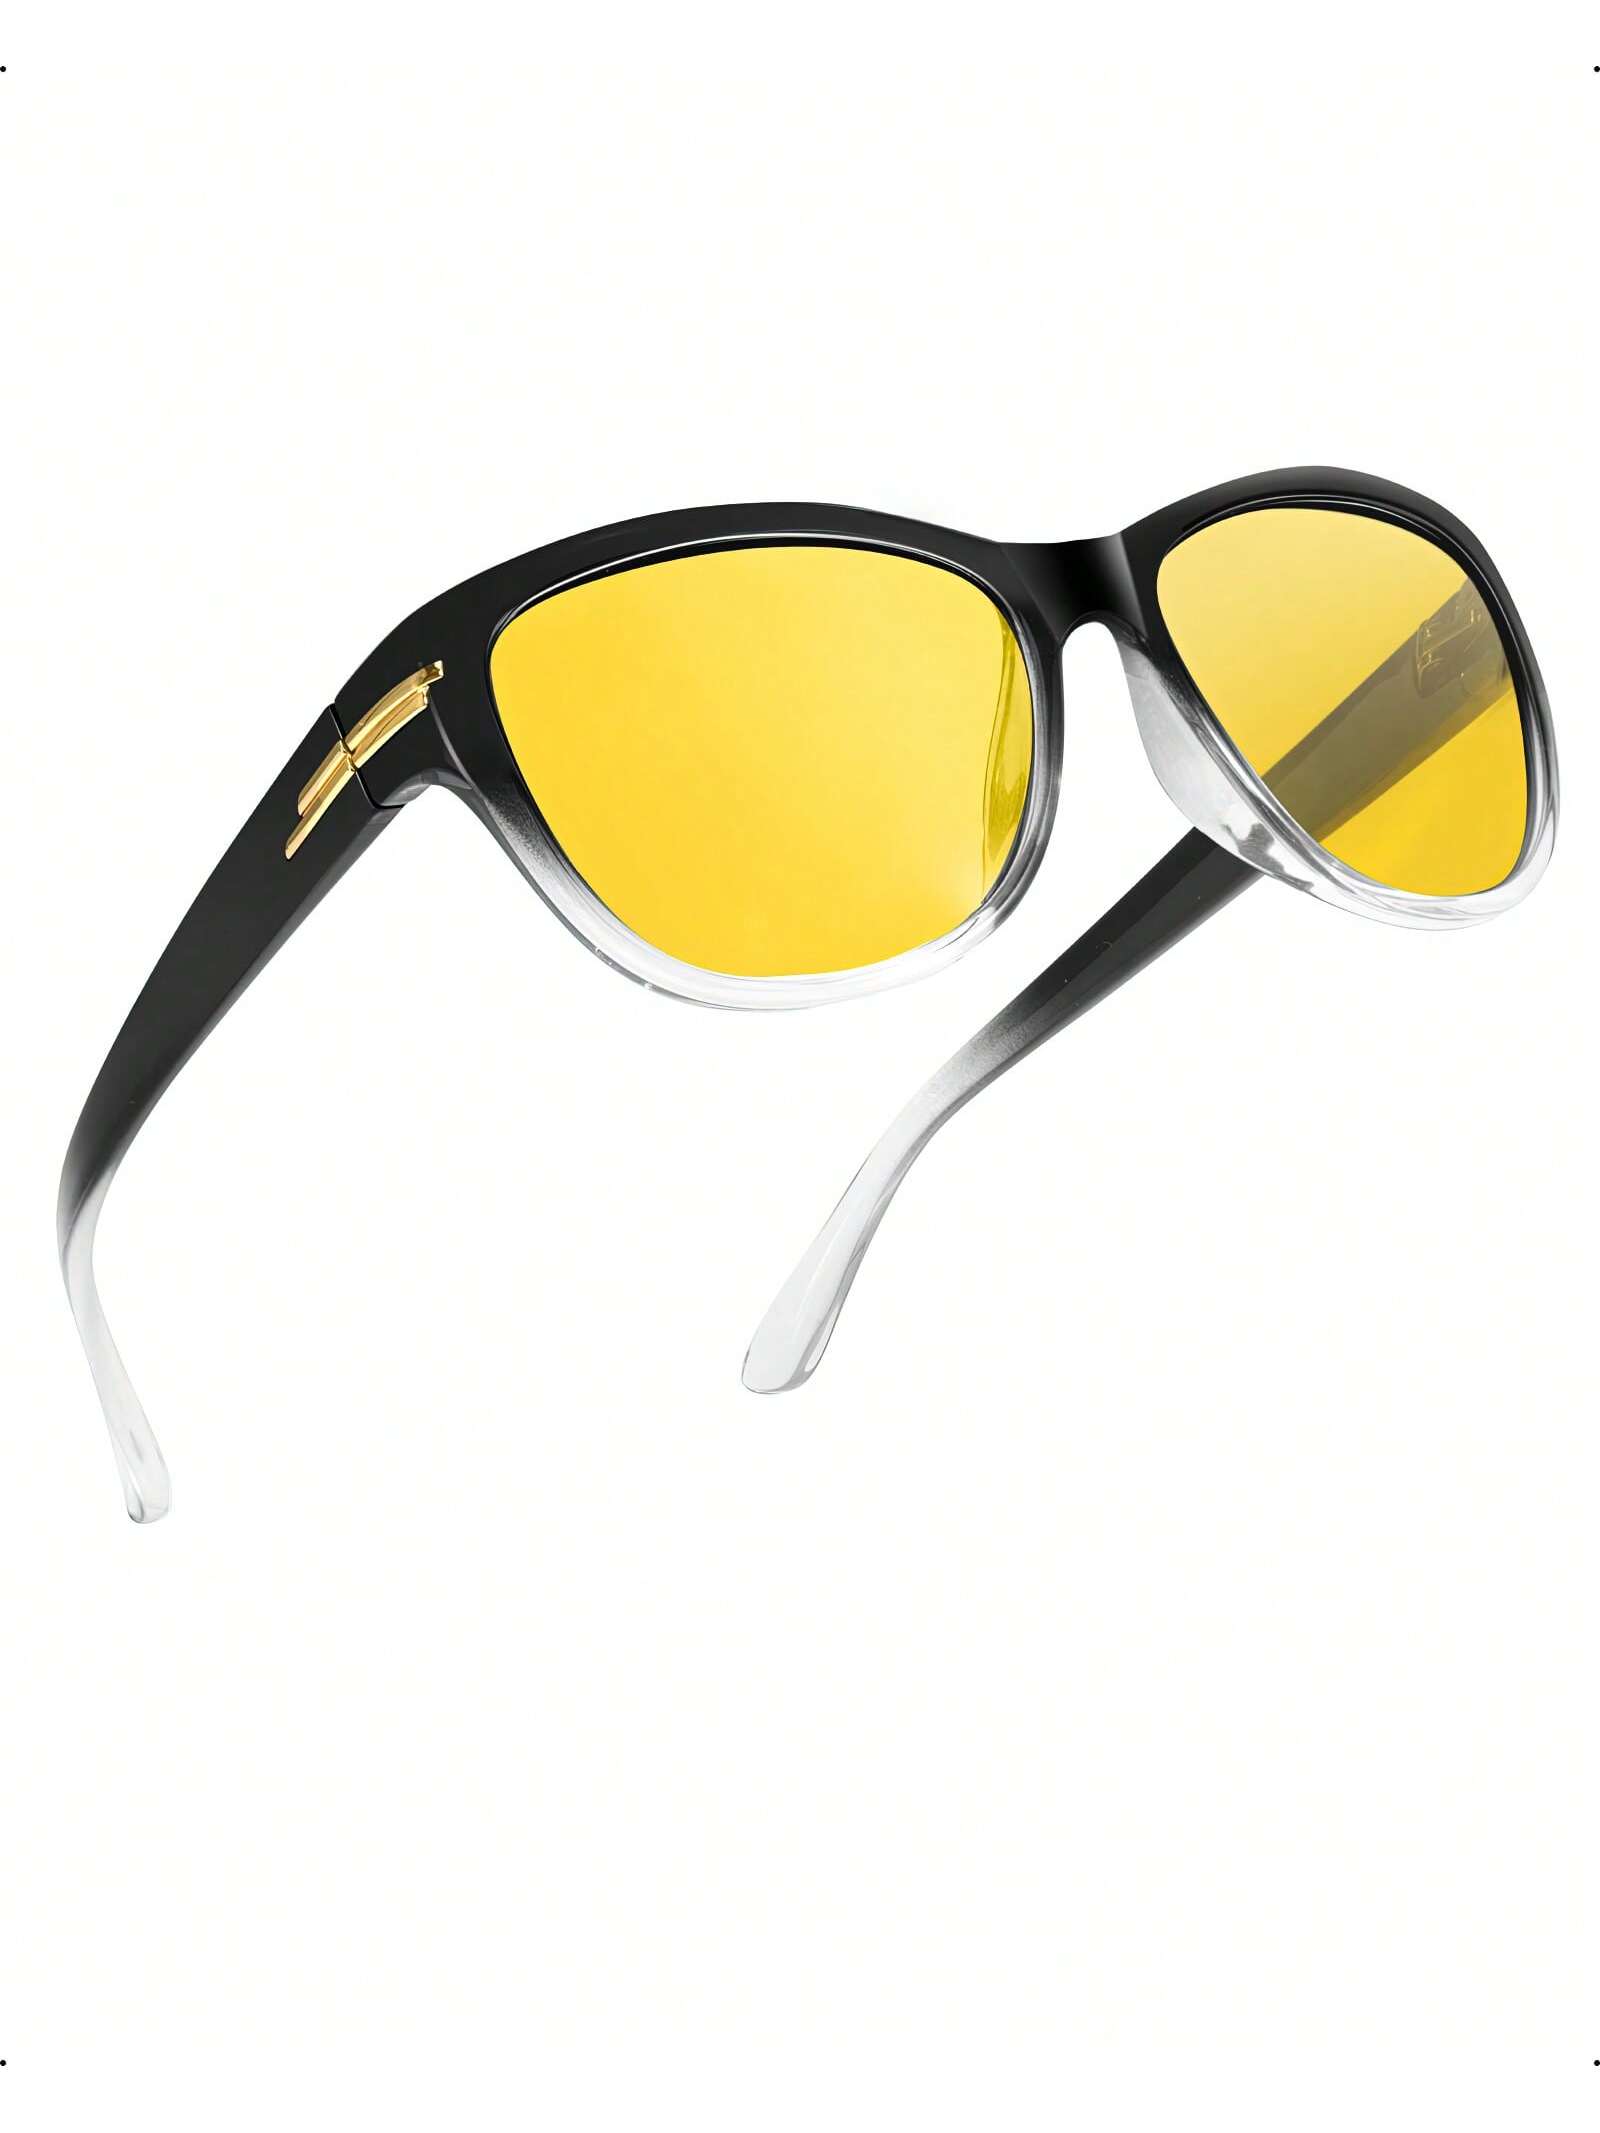 LVIOE 1 пара очков для ночного вождения для женщин и мужчин антибликовые поляризационные желтые очки ночного видения для ночного времени LN2317 цена и фото